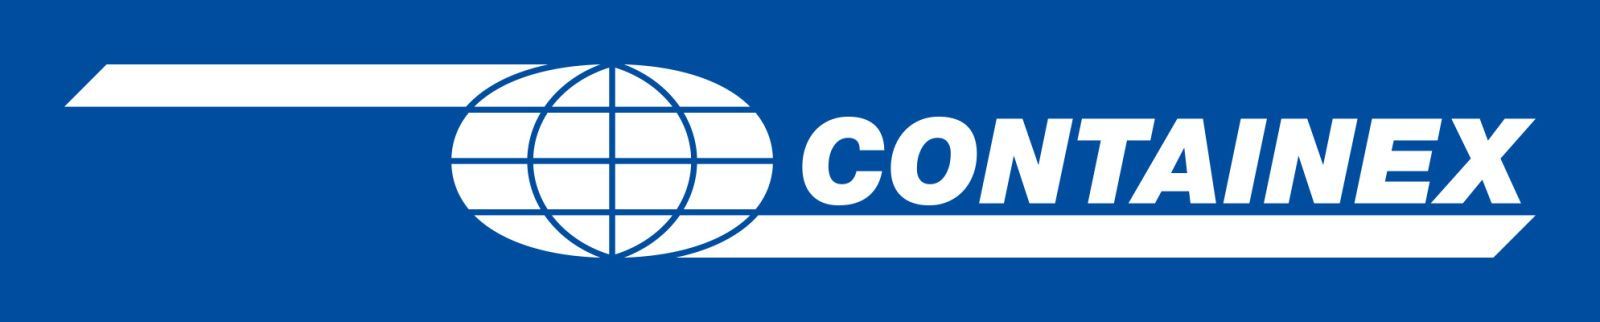 containex-container-handelsgesellschaft-mbh-hauptsitz-osterreich-wiener-neudorf-logo